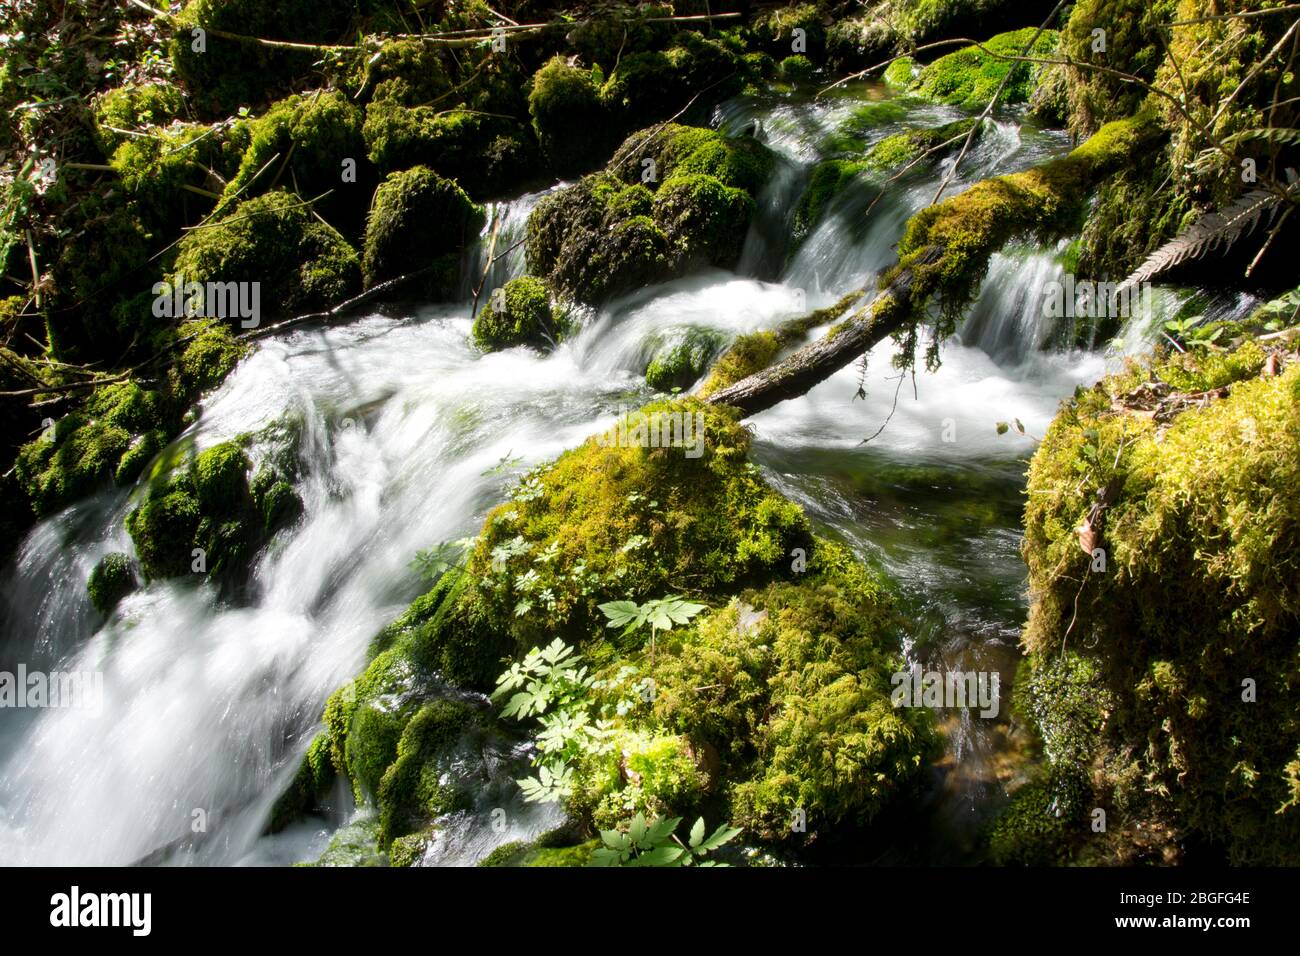 Die Quellen von Blanches Fontaines in der Pichoux-Schlucht im Kanton Jura, Schweiz Stock Photo